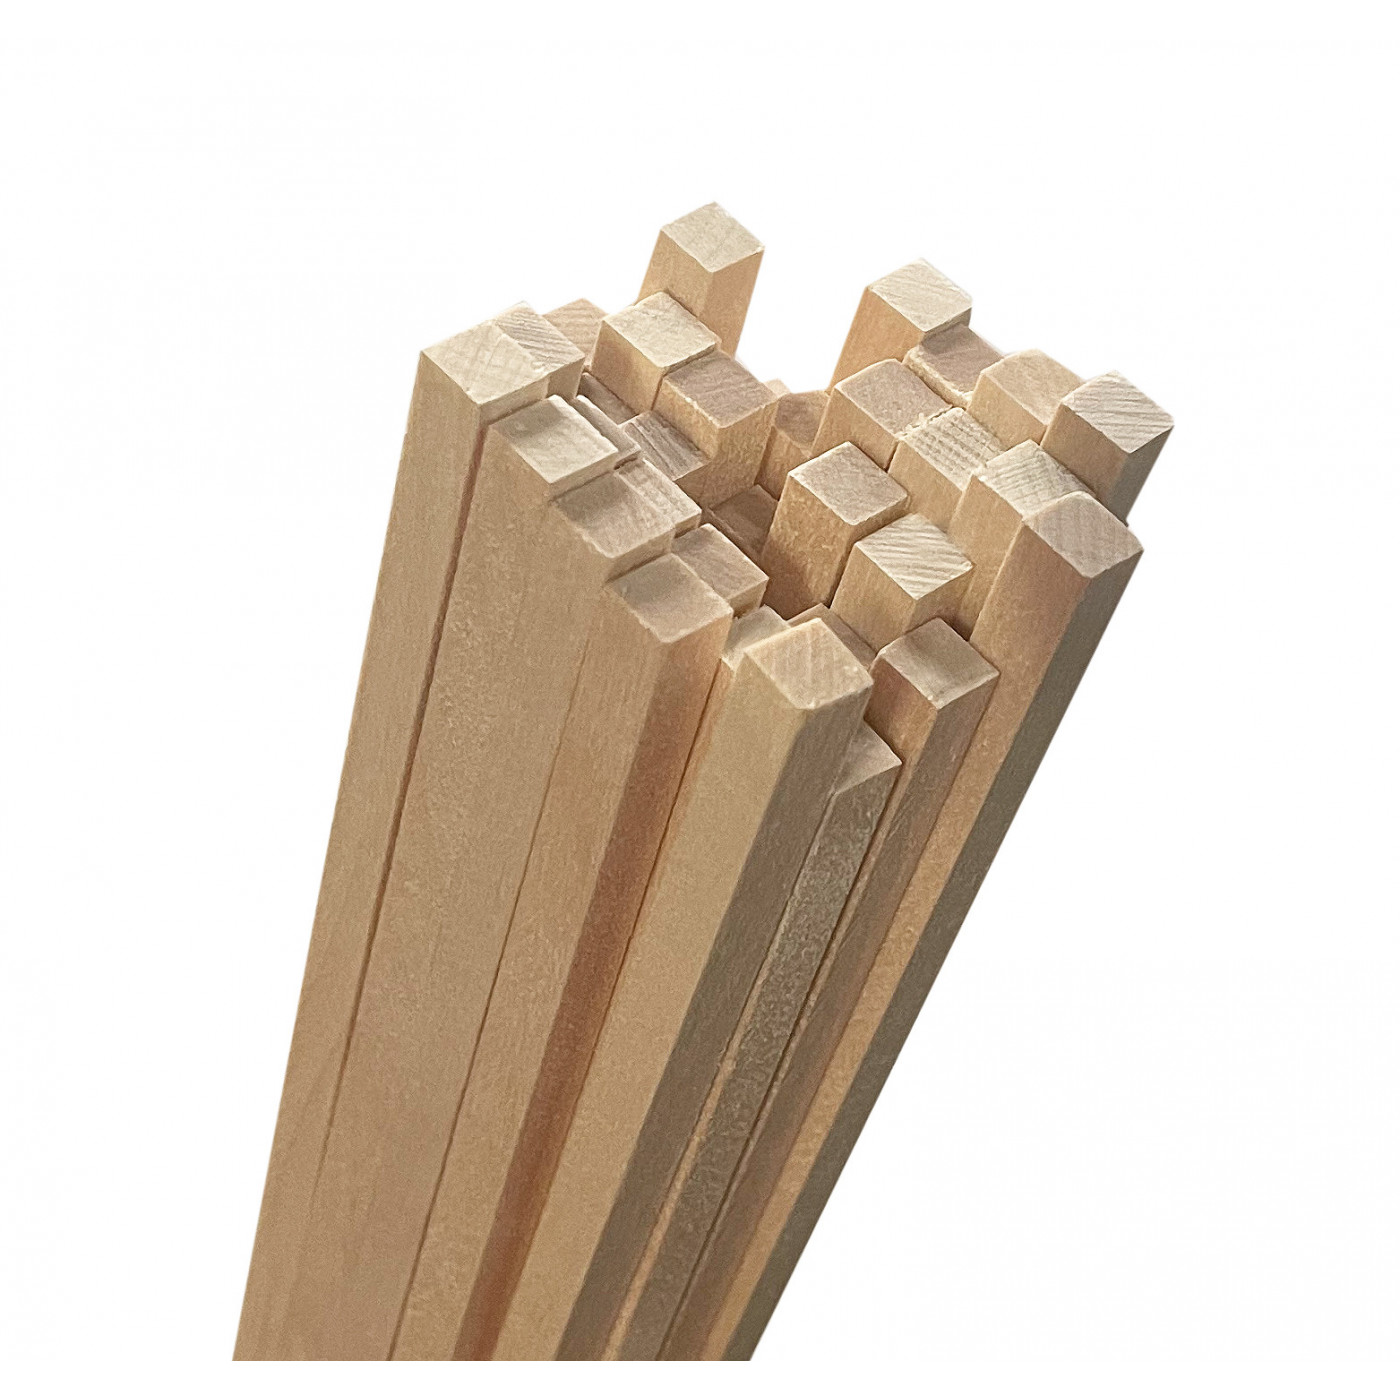 Rudyard Kipling Er is een trend prins Set van 50 houten stokken (vierkant, 5x5 mm, 60 cm lang, berkenhout) -  Wood, Tools & Deco